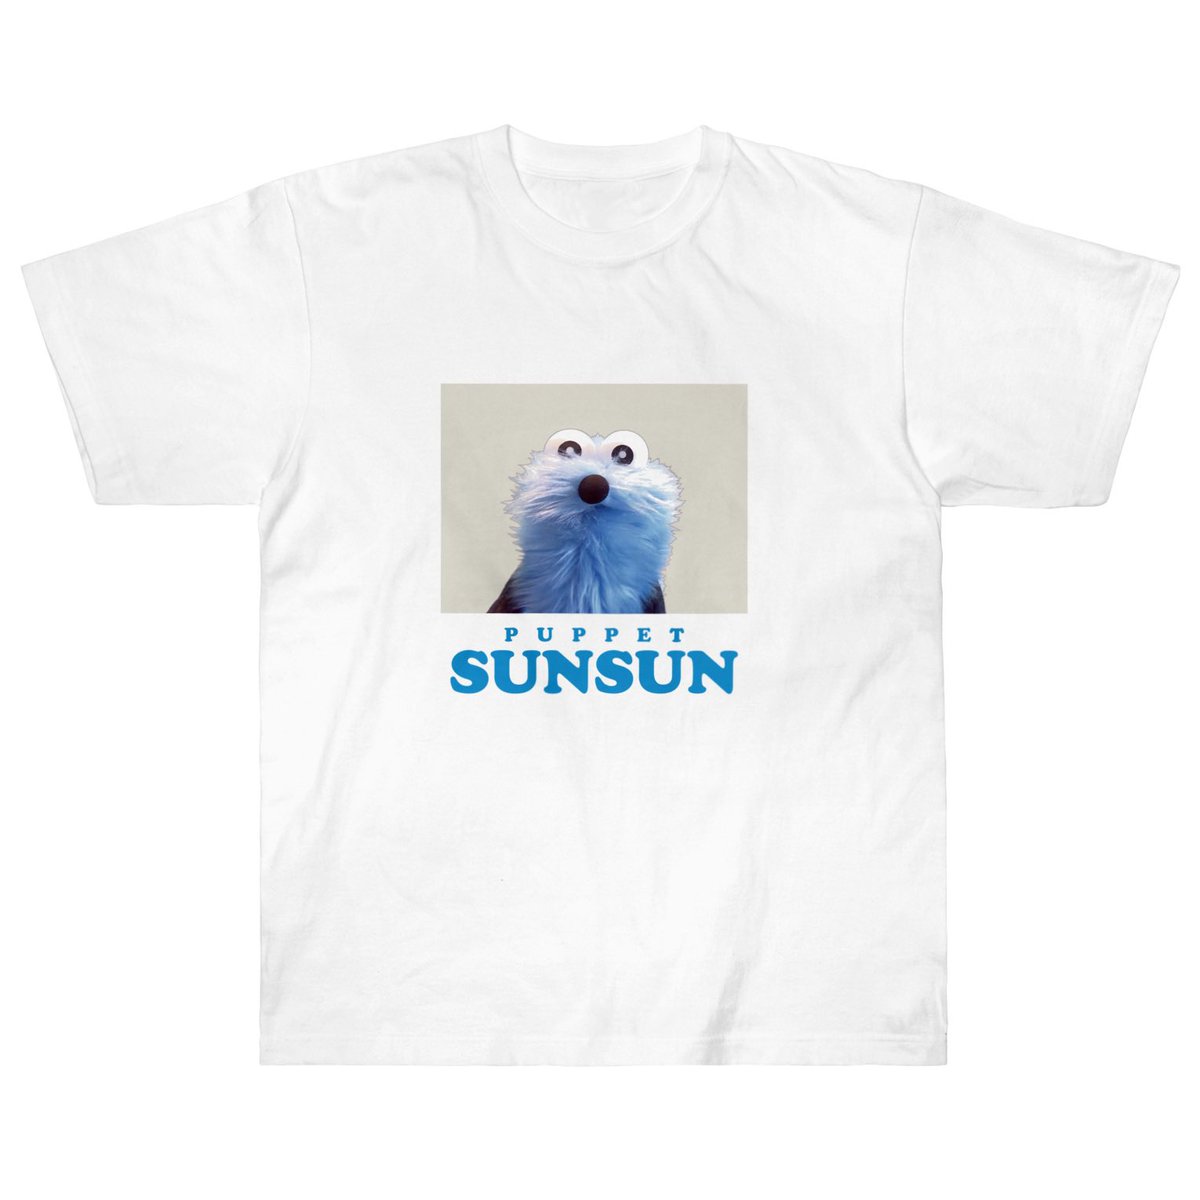 「SUZURIさんでTシャツセールがはじまりましたっ!6/11(日)23:59まで」|パペットスンスンのイラスト